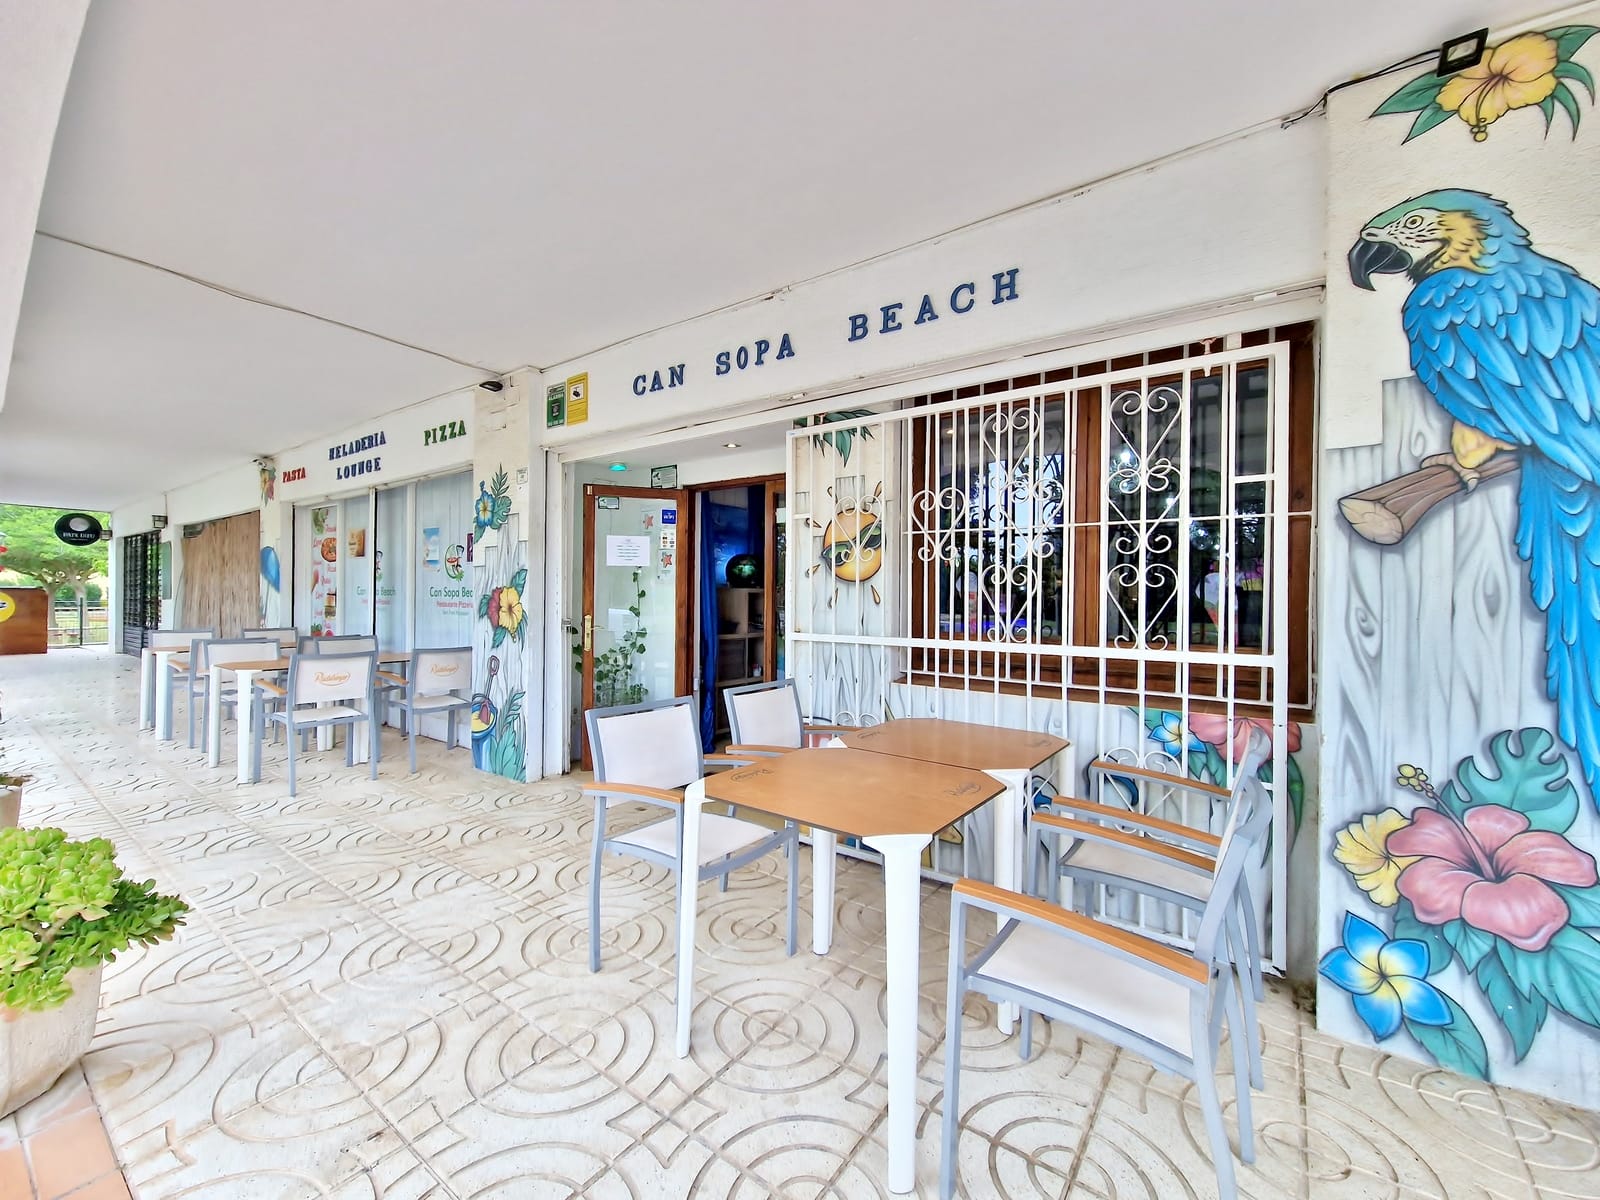 Exclusividad St Pere Pescador - Se vende Comercio, playa 350m